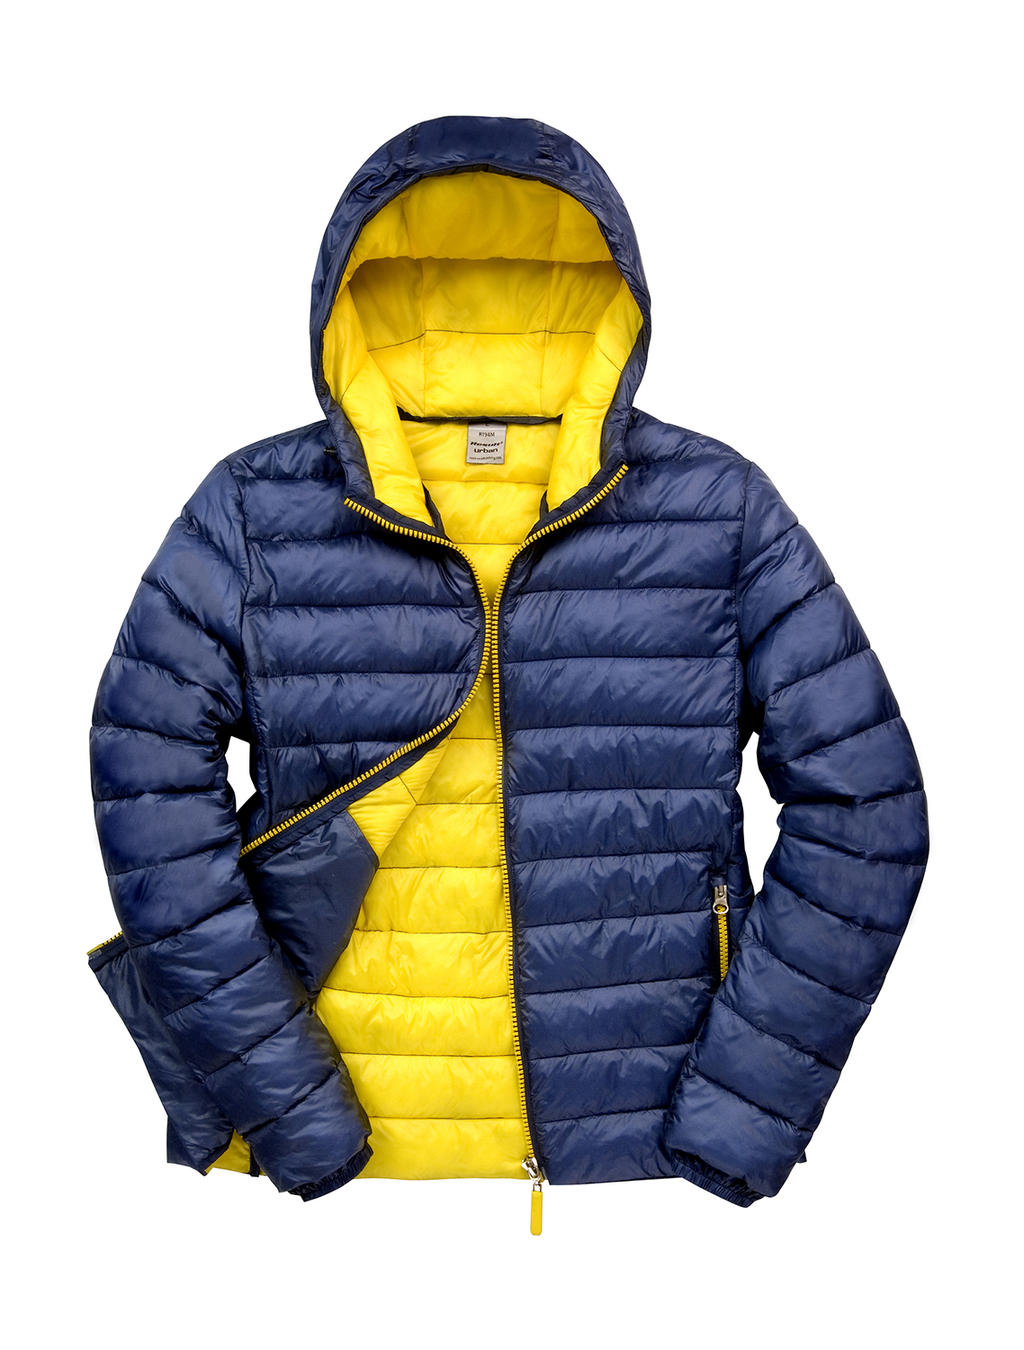 Pánská Snow Bird bunda s kapucí Velikost: L, Barva: Navy/Yellow